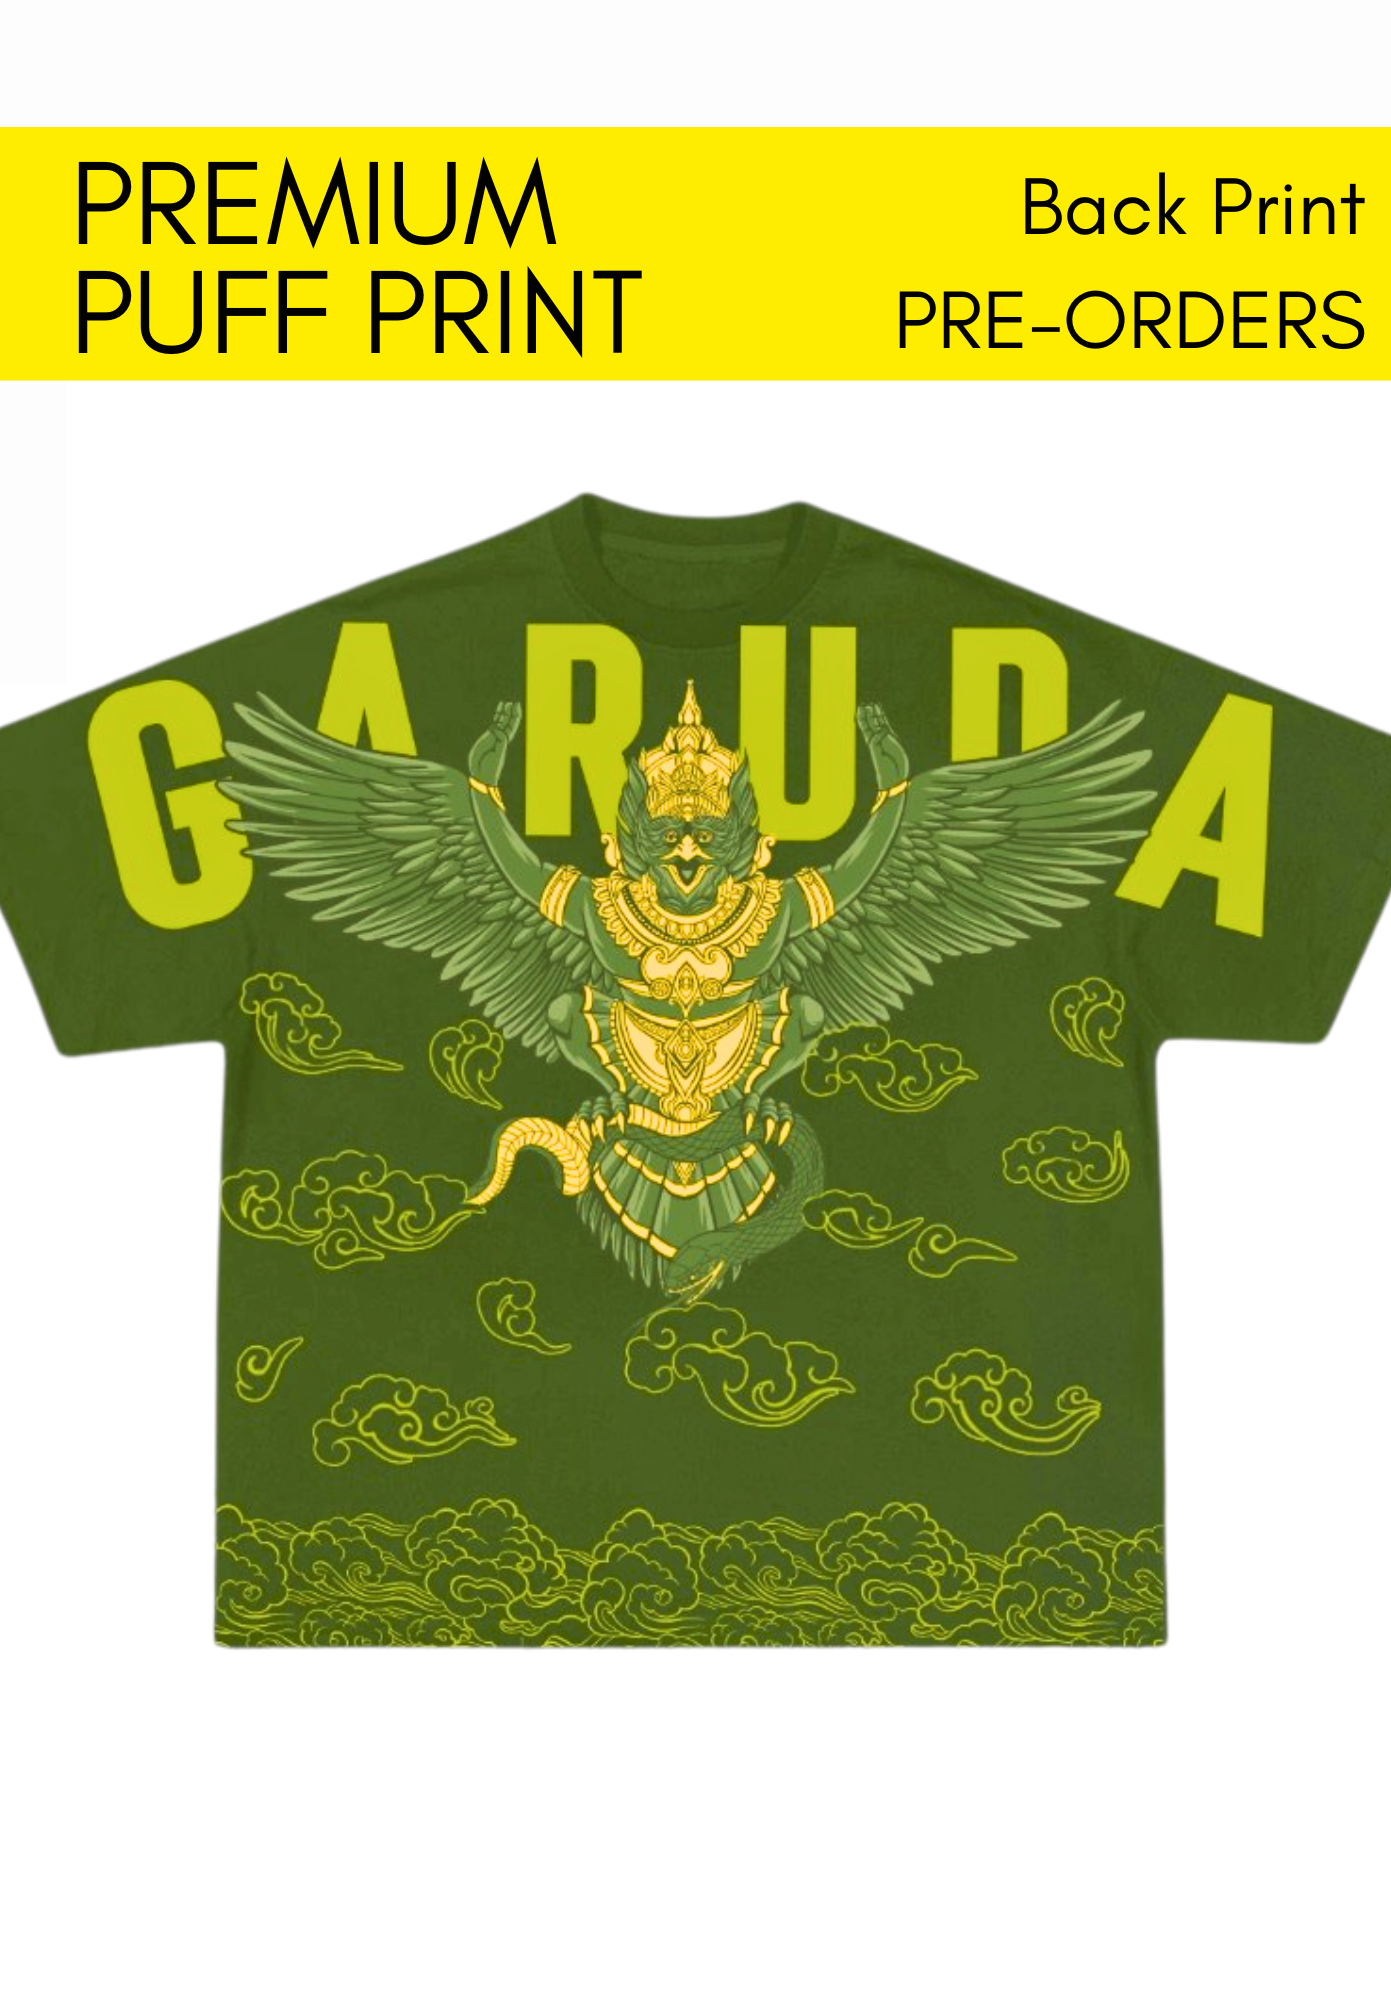 Garuda - Premium Puff Print (PRE-ORDERS)